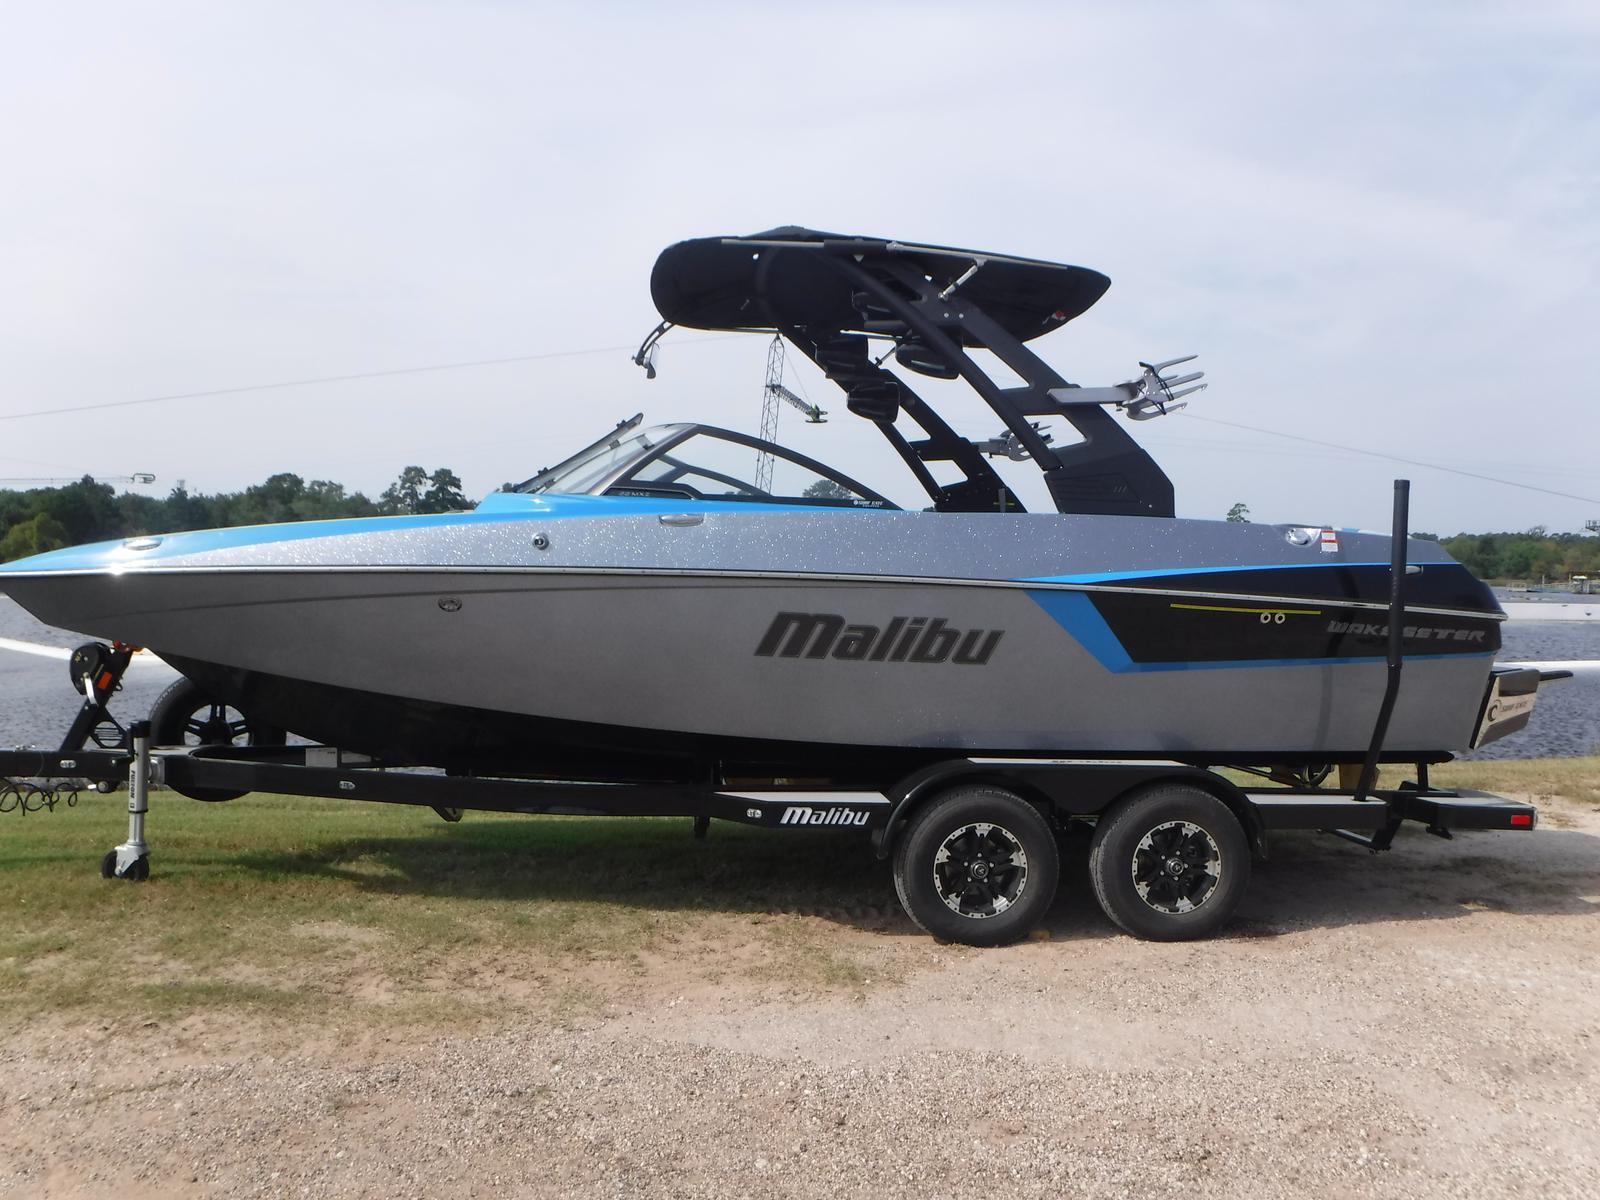 Malibu 22 Mxz boats for sale - boats.com